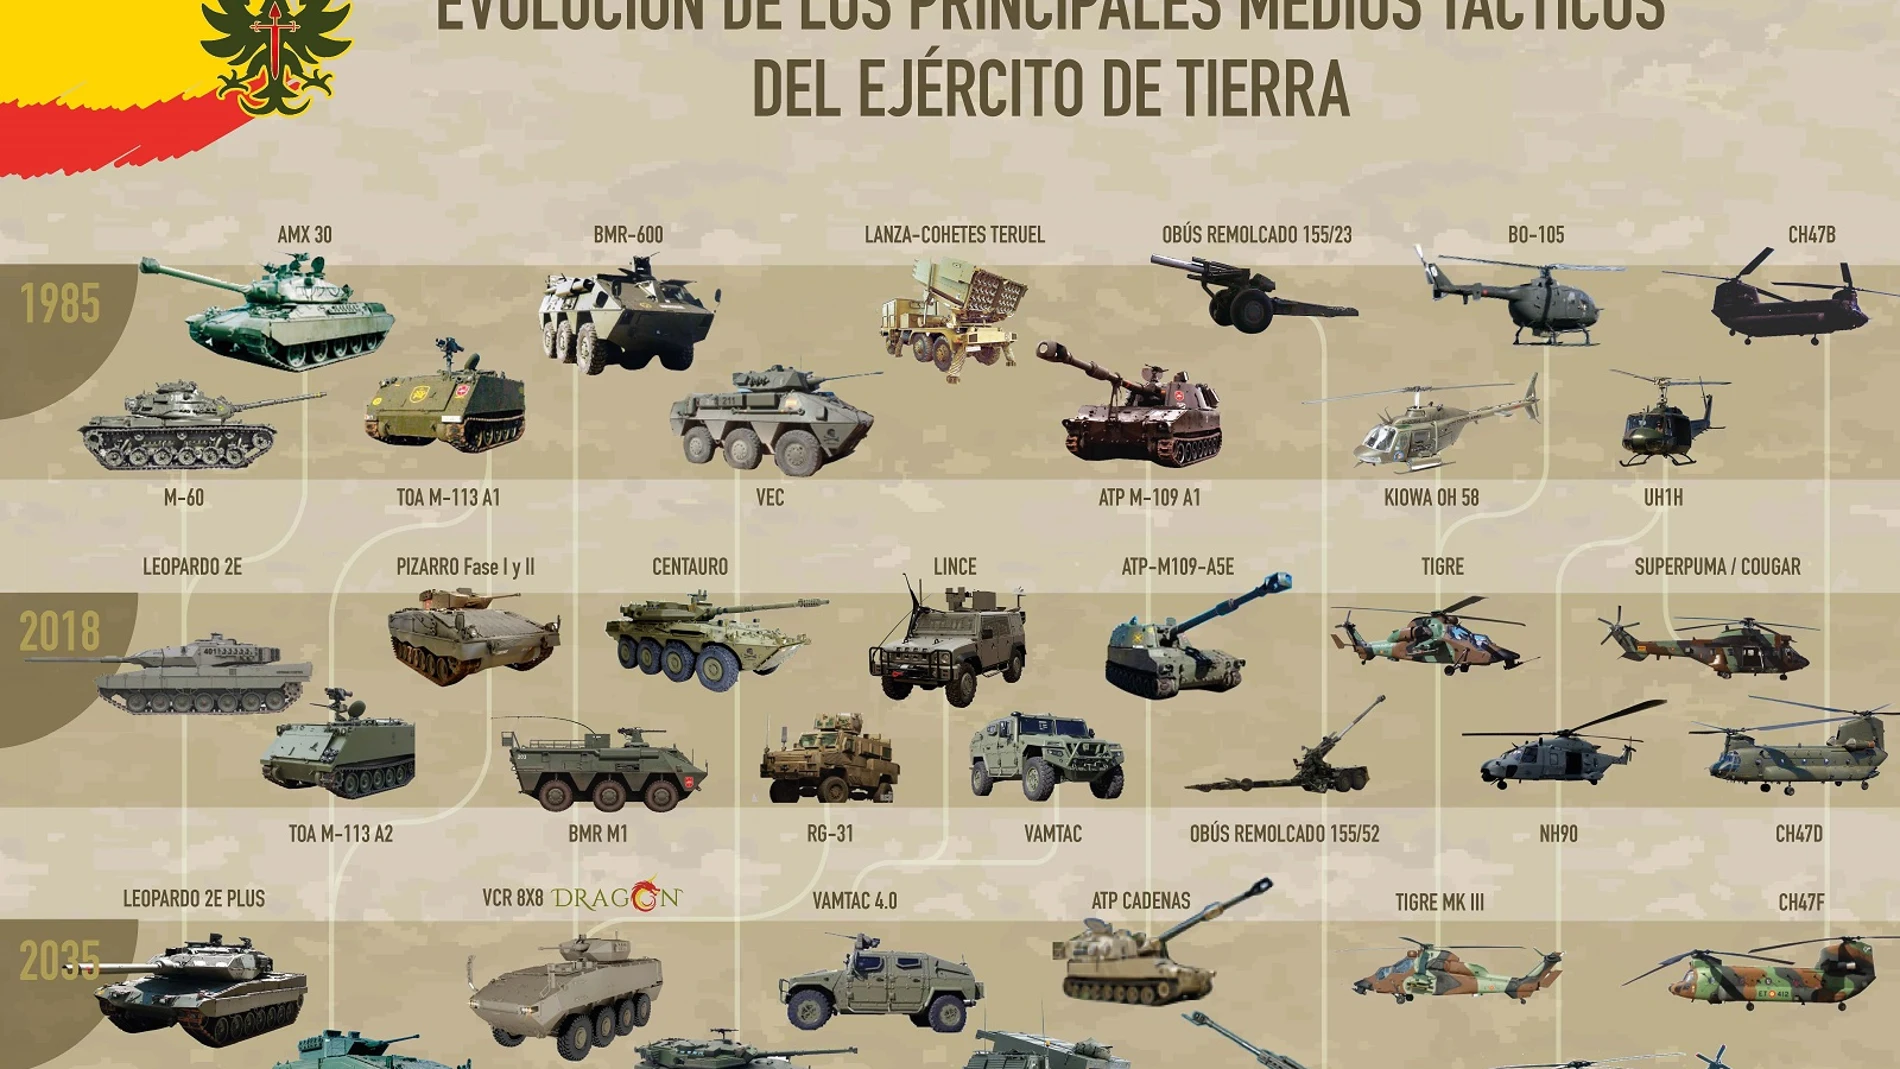 Así eran, así son y así serán los medios tácticos del Ejército de Tierra español